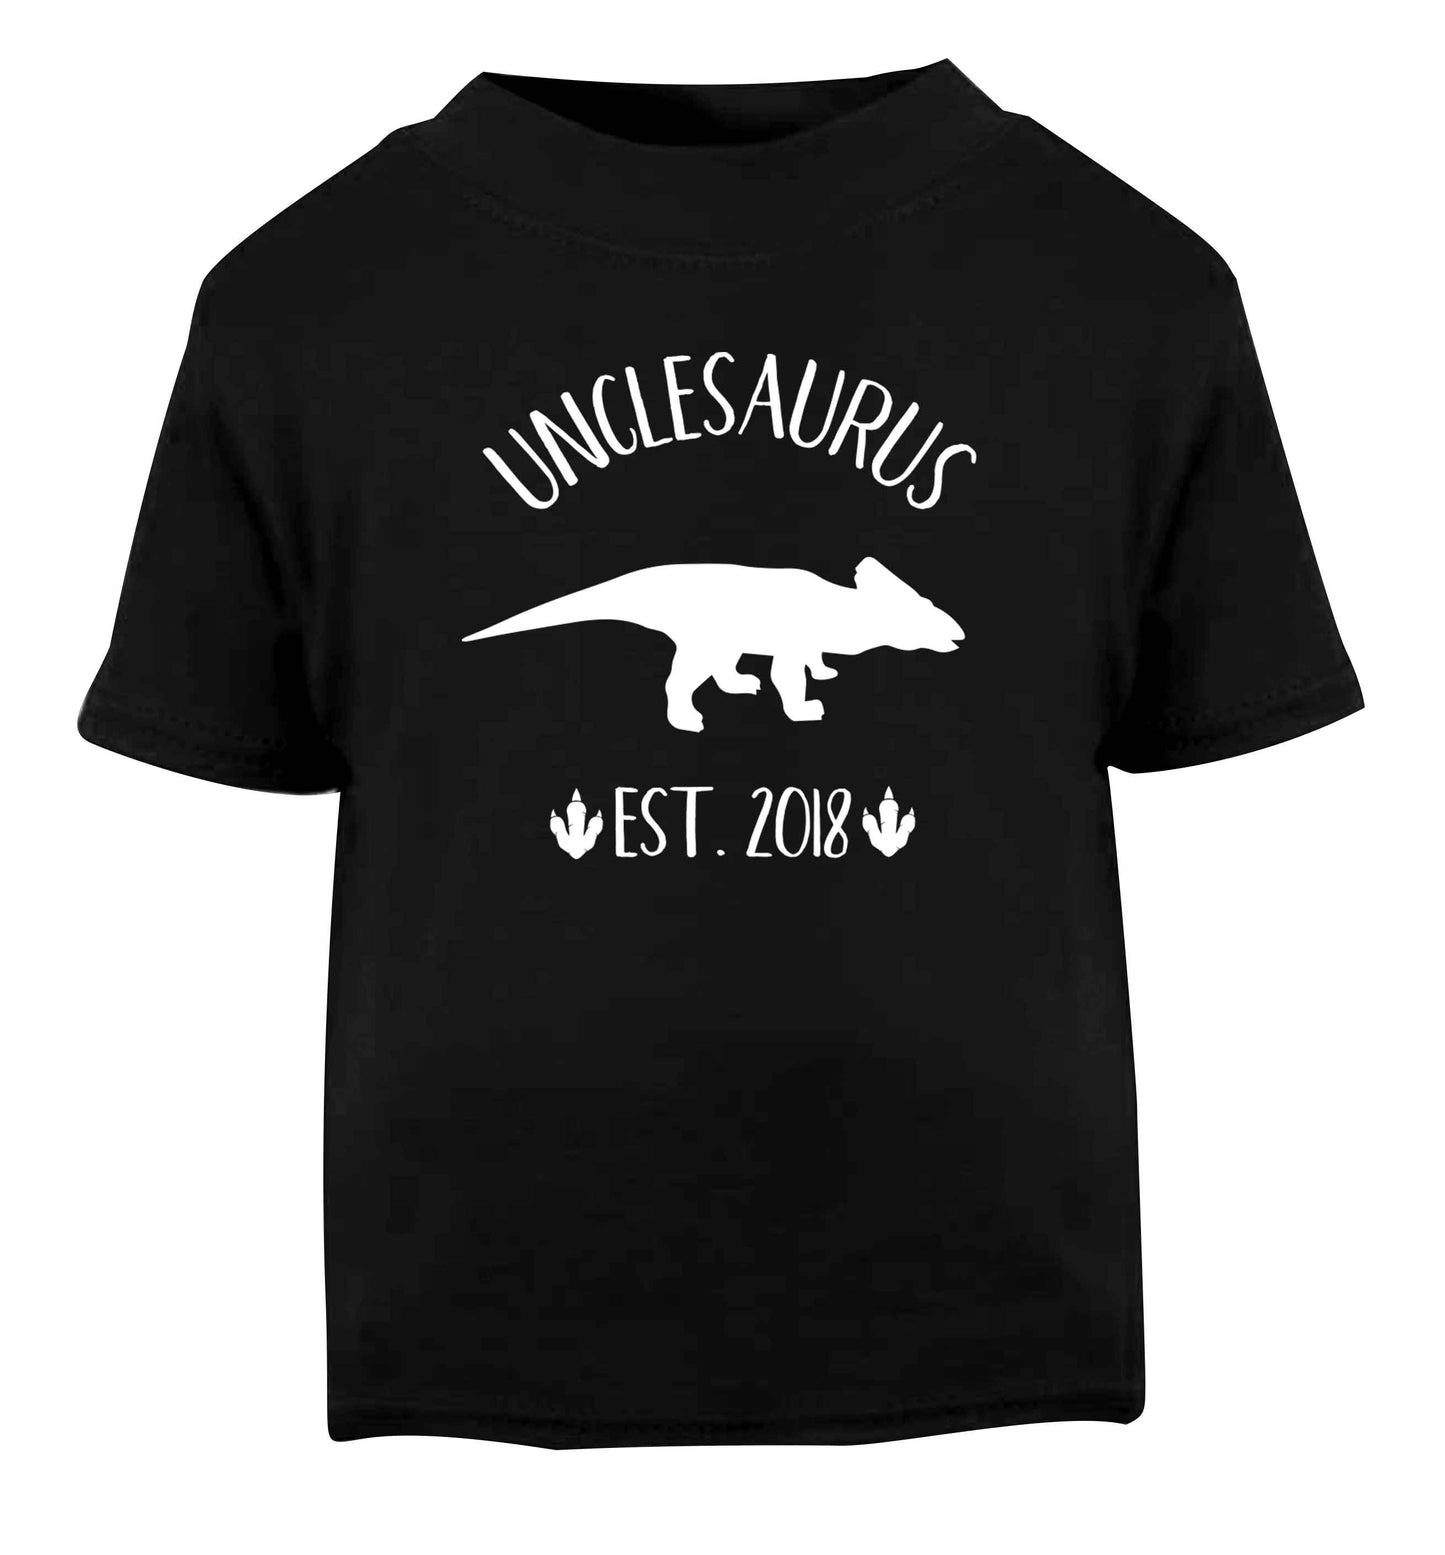 Personalised unclesaurus since (custom date) Black Baby Toddler Tshirt 2 years